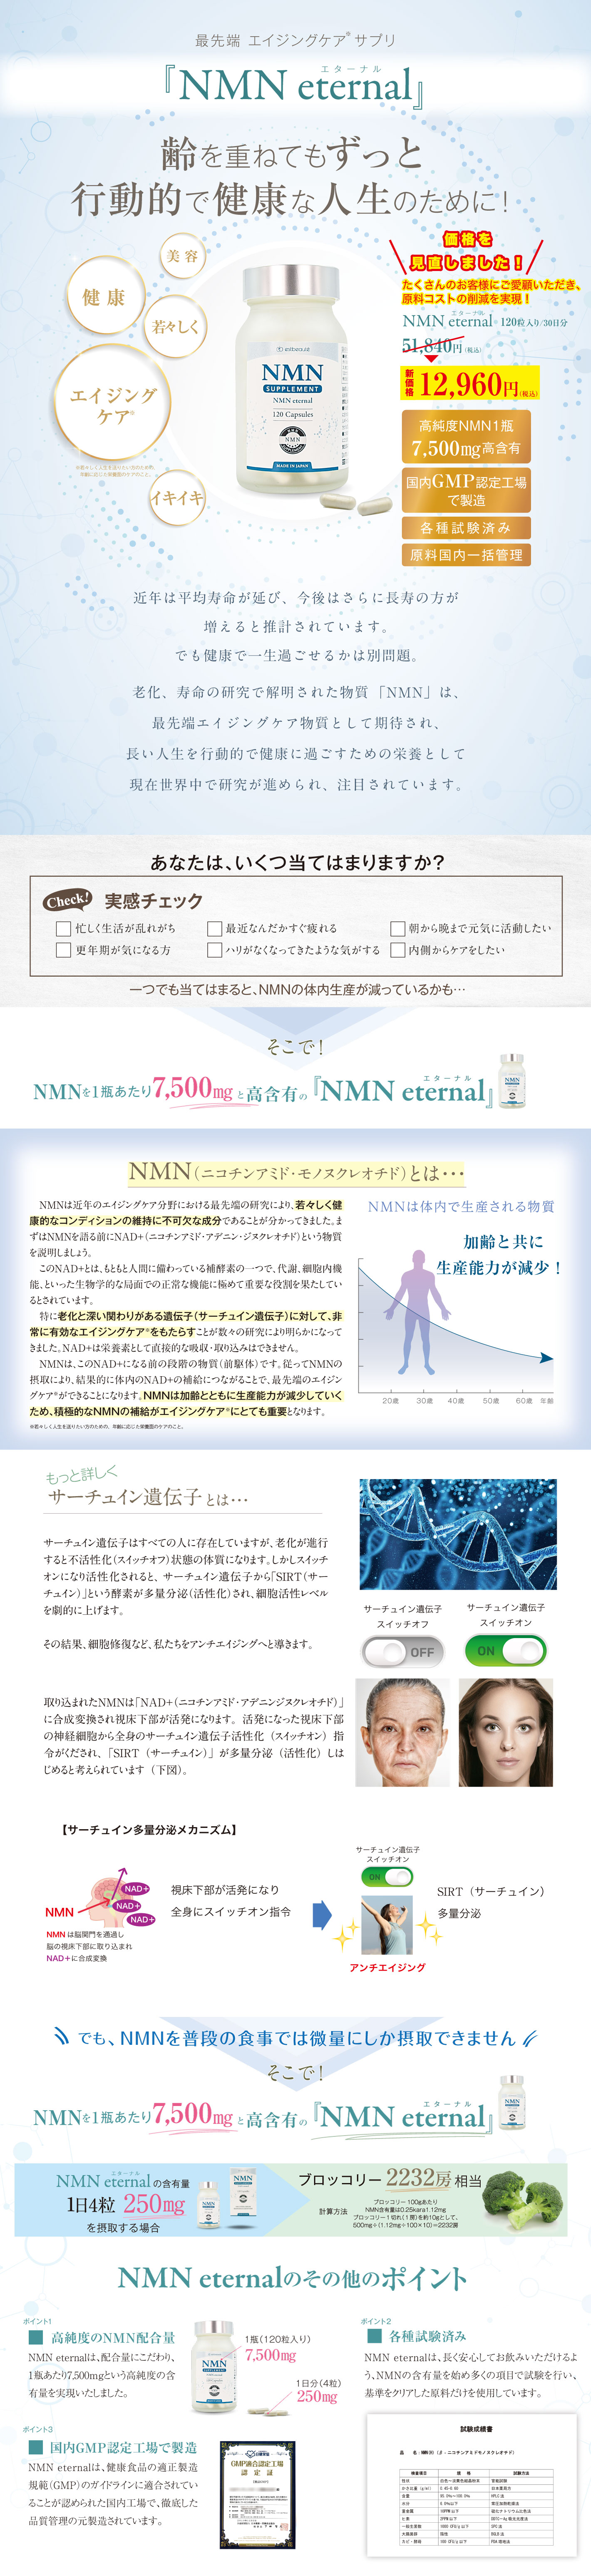 NMN eternal